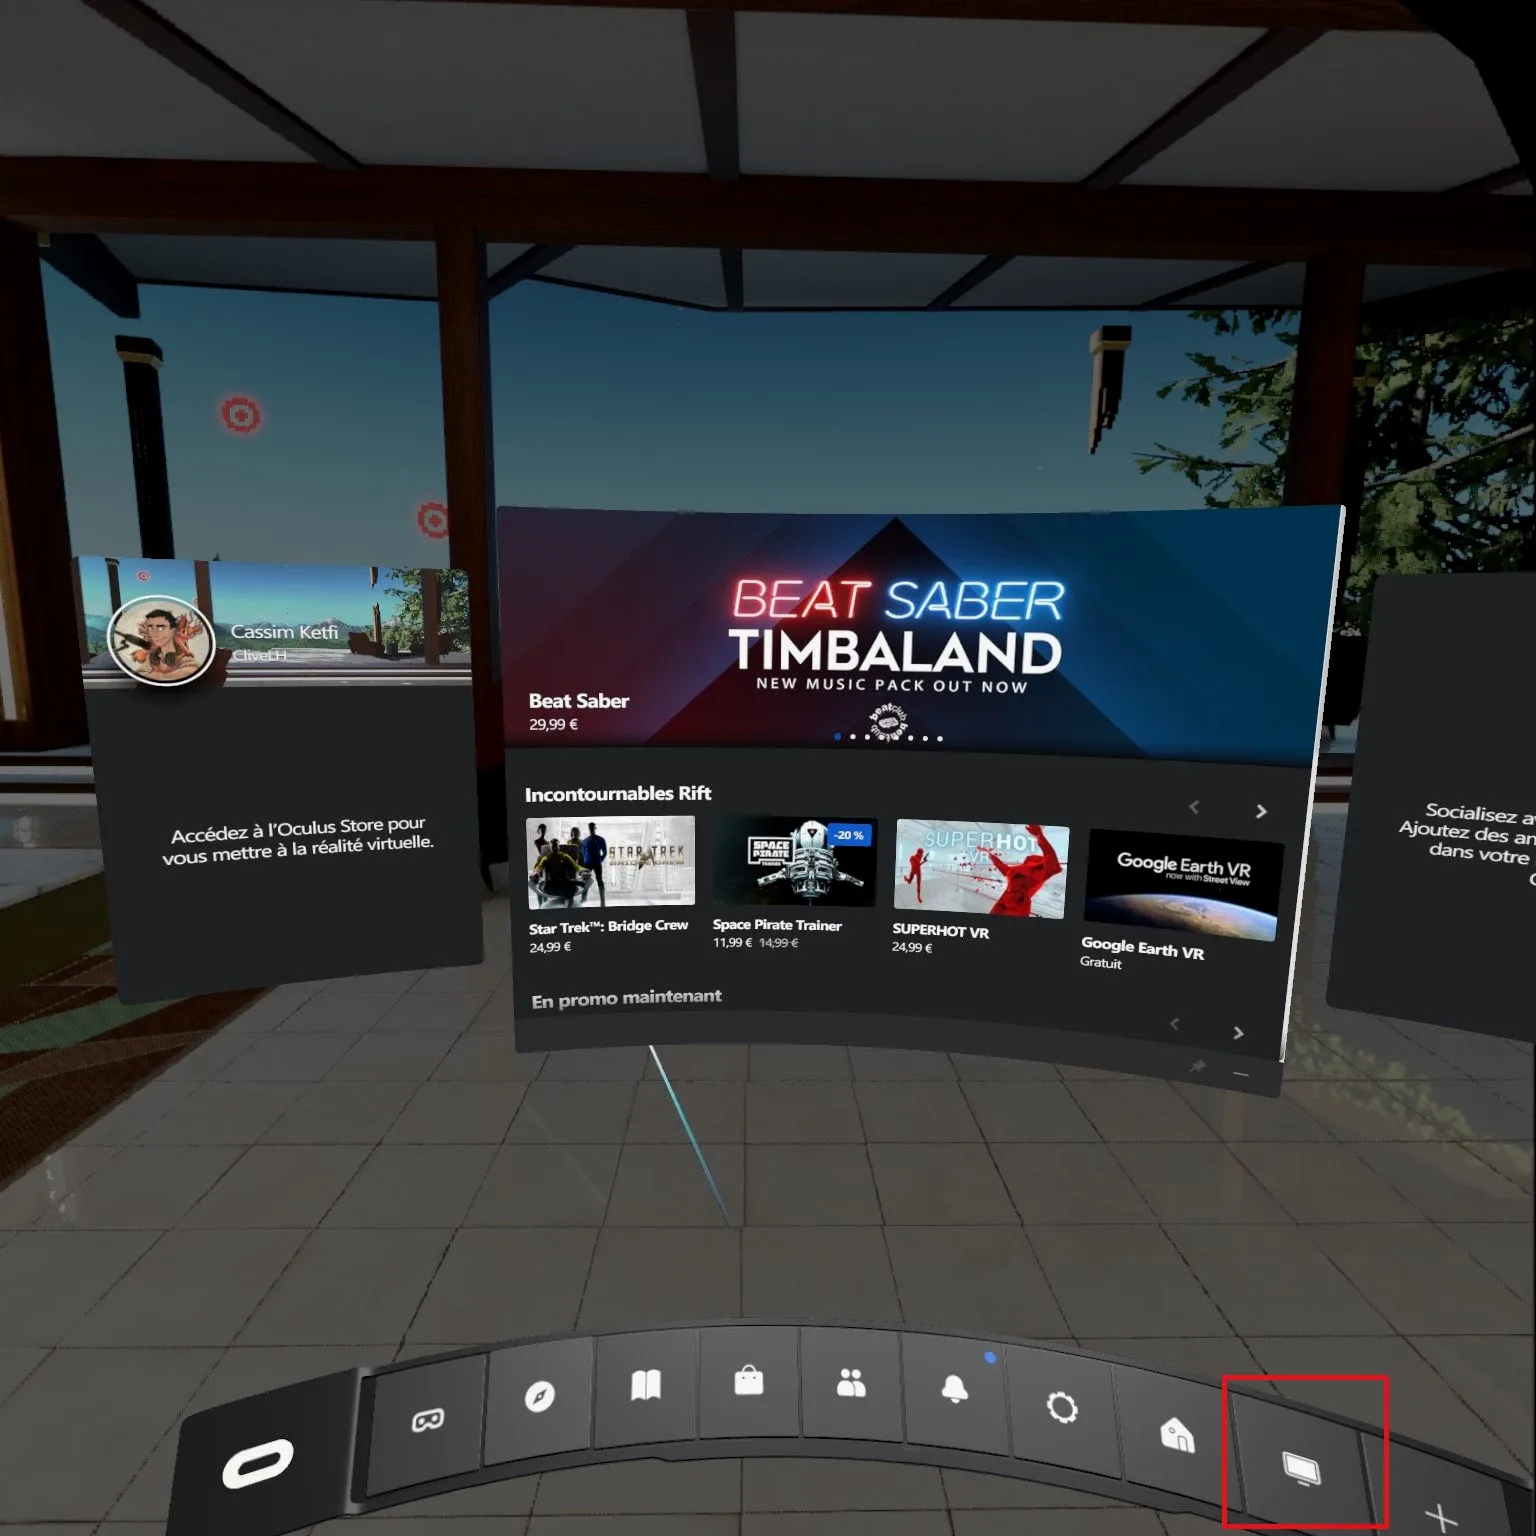 Oculus串流PC的界面，点击红框处可以浏览PC显示器画面